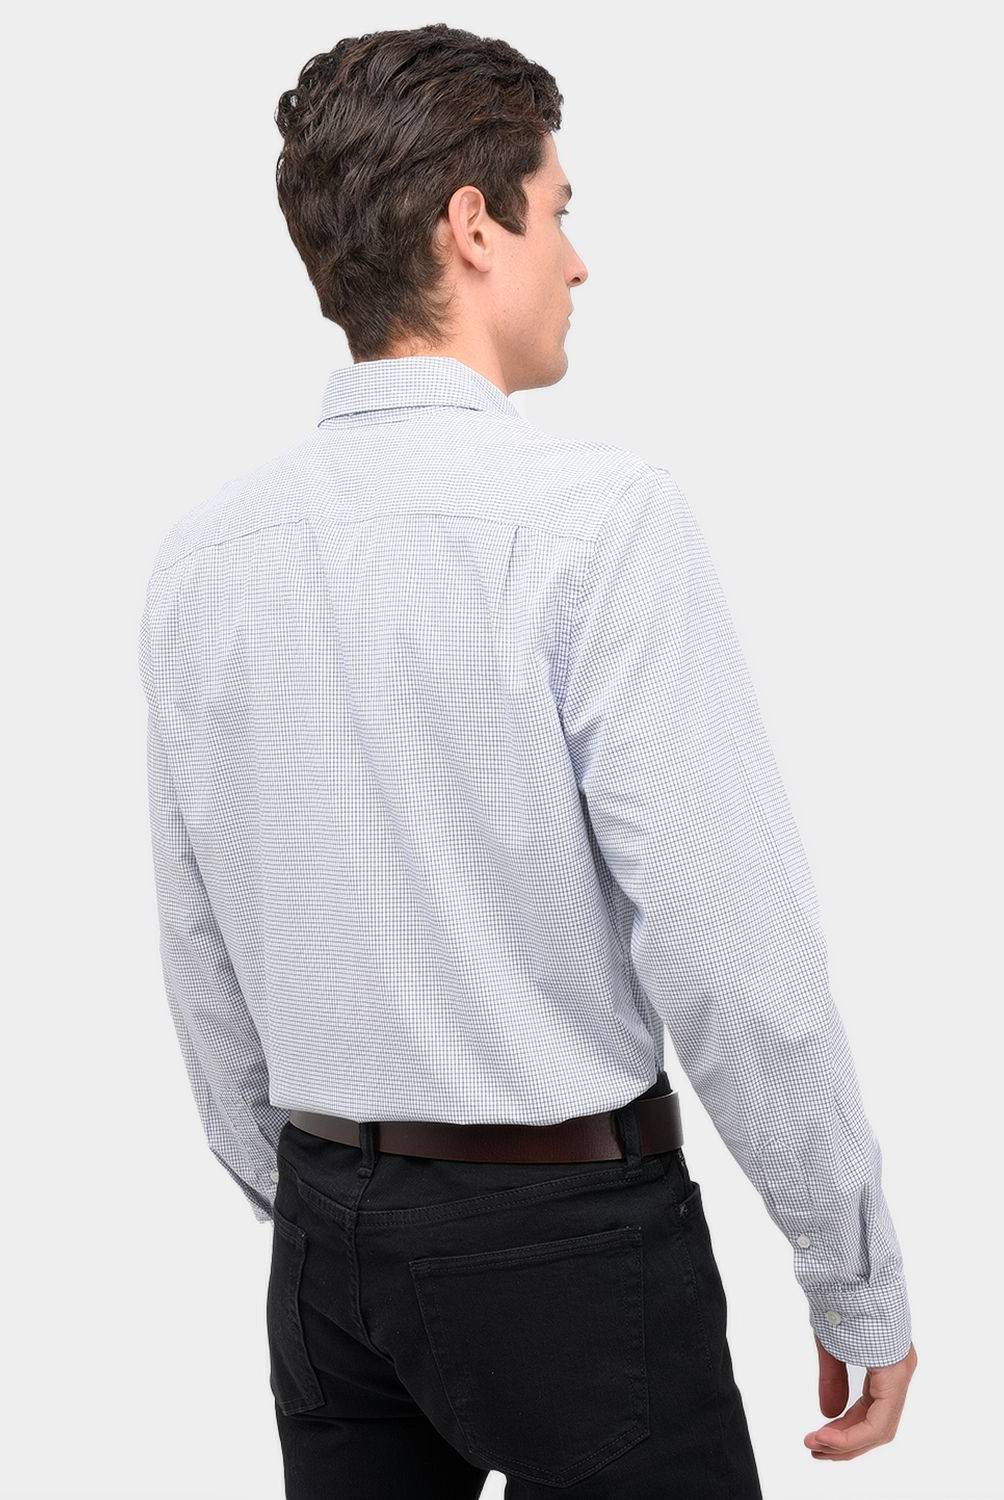 GAP - Camisa casual Slim Gap